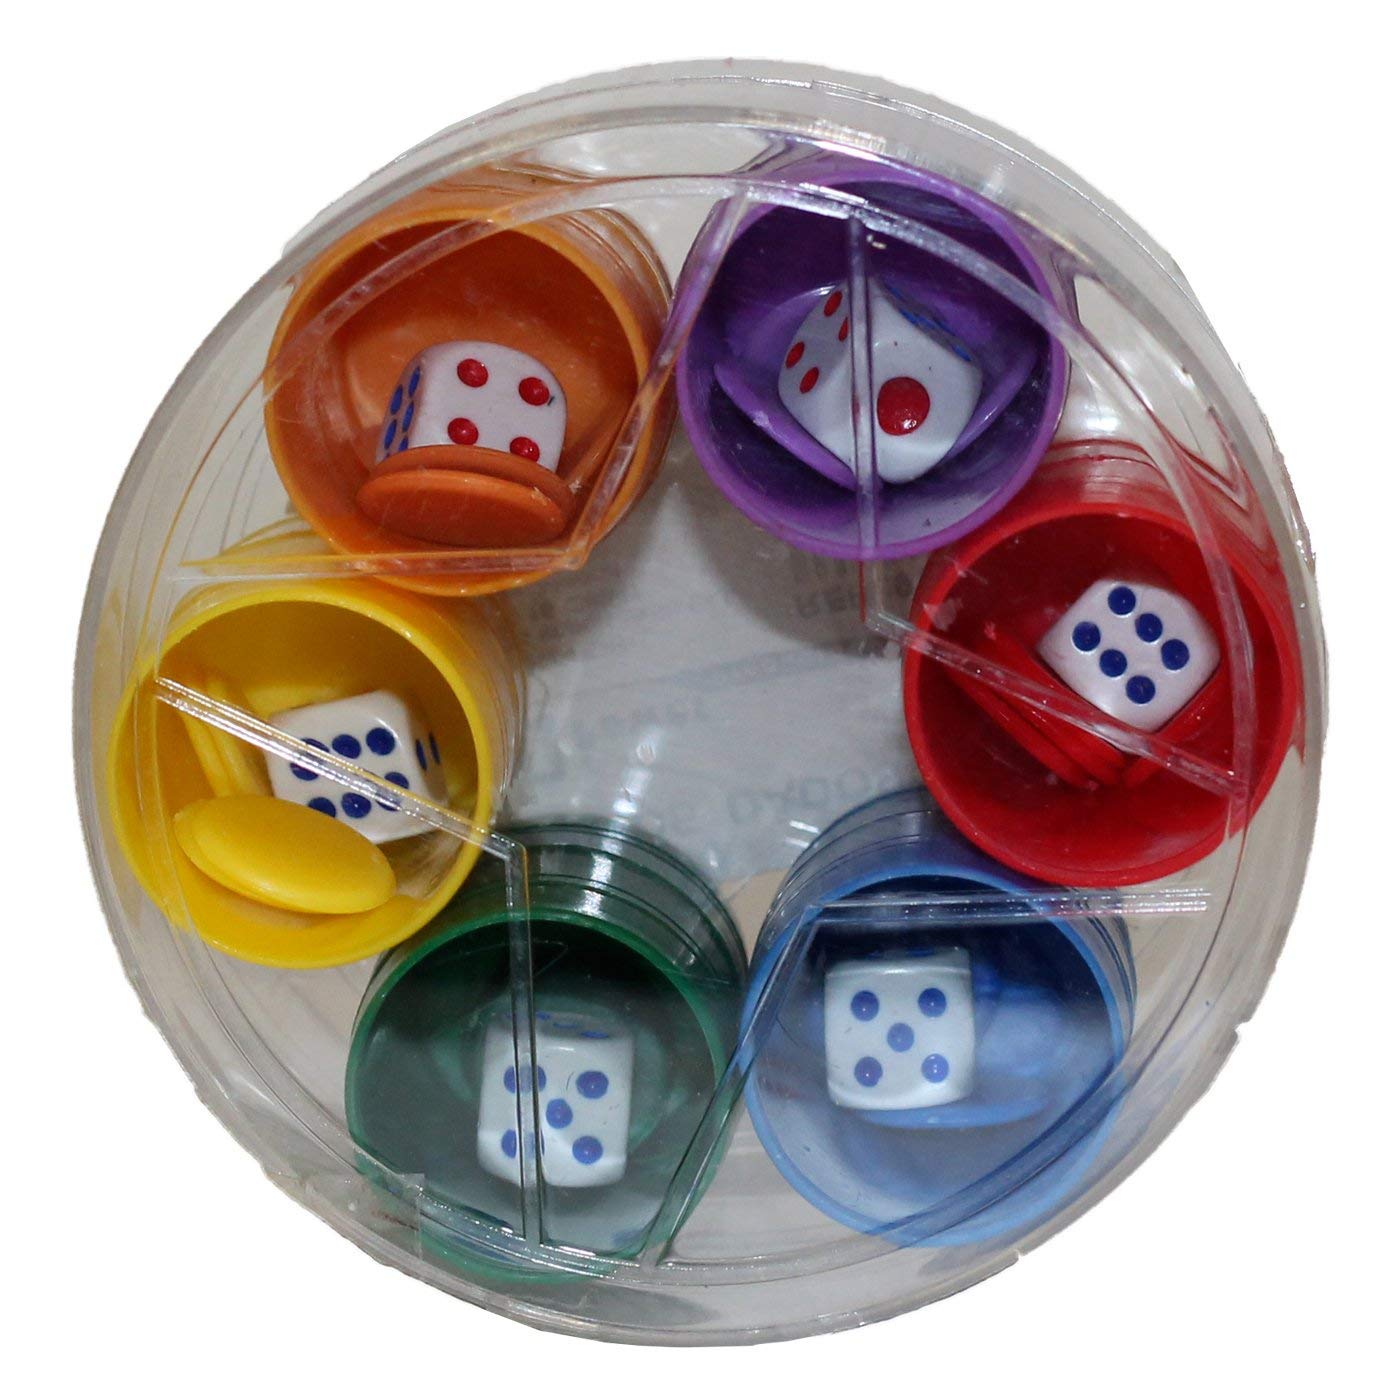 Set completo de 6 cubiletes de plástico, parchis, juego de mesa,  multicolor, fichas, dados, cubiletes dimensiones 4.5 x 2.5 cm.